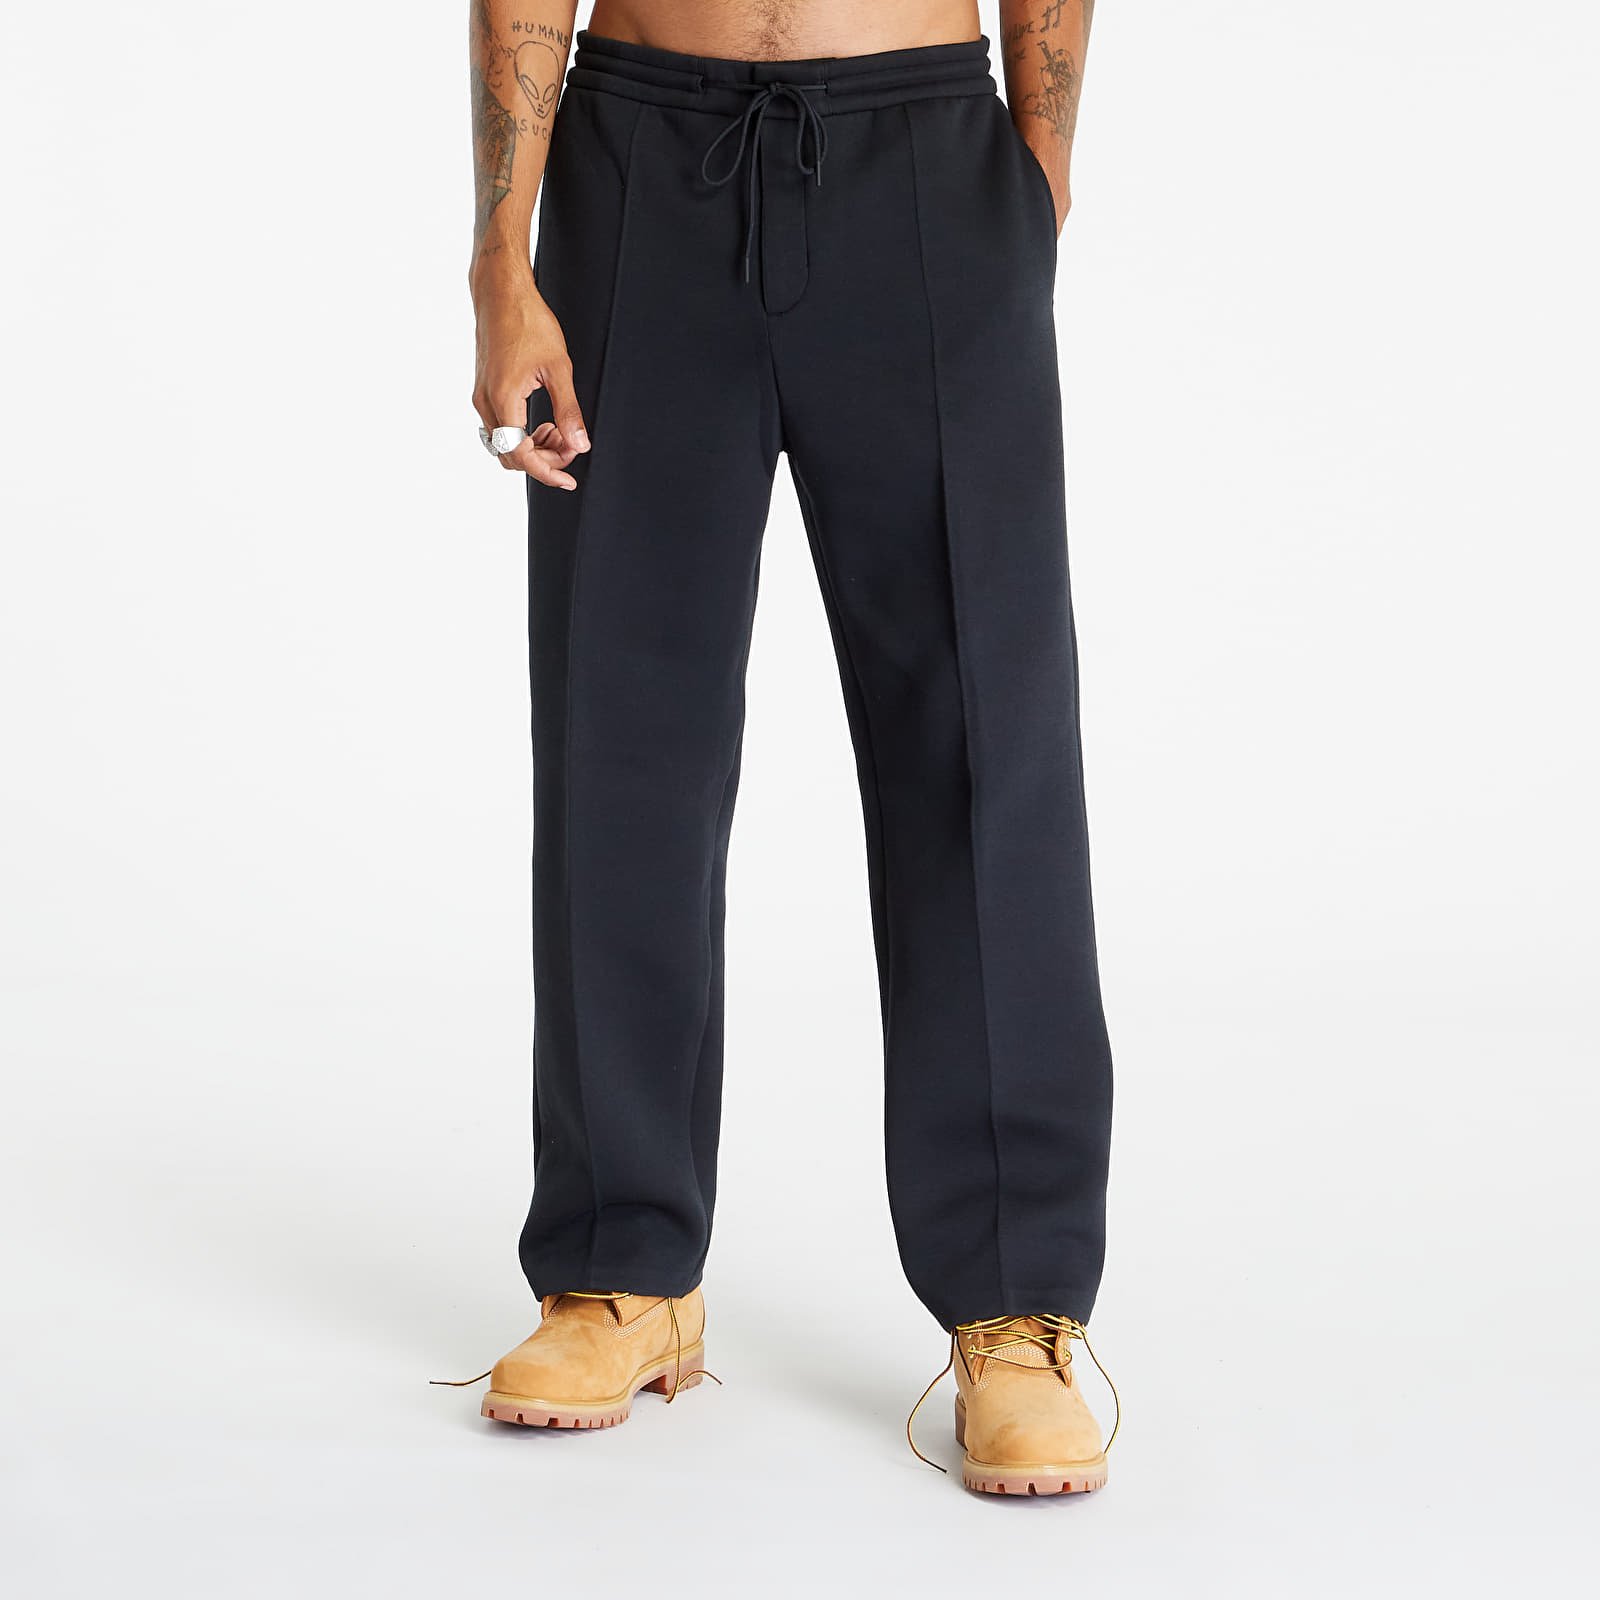 Nike - tech fleece men's fleece tailored pants black/ black